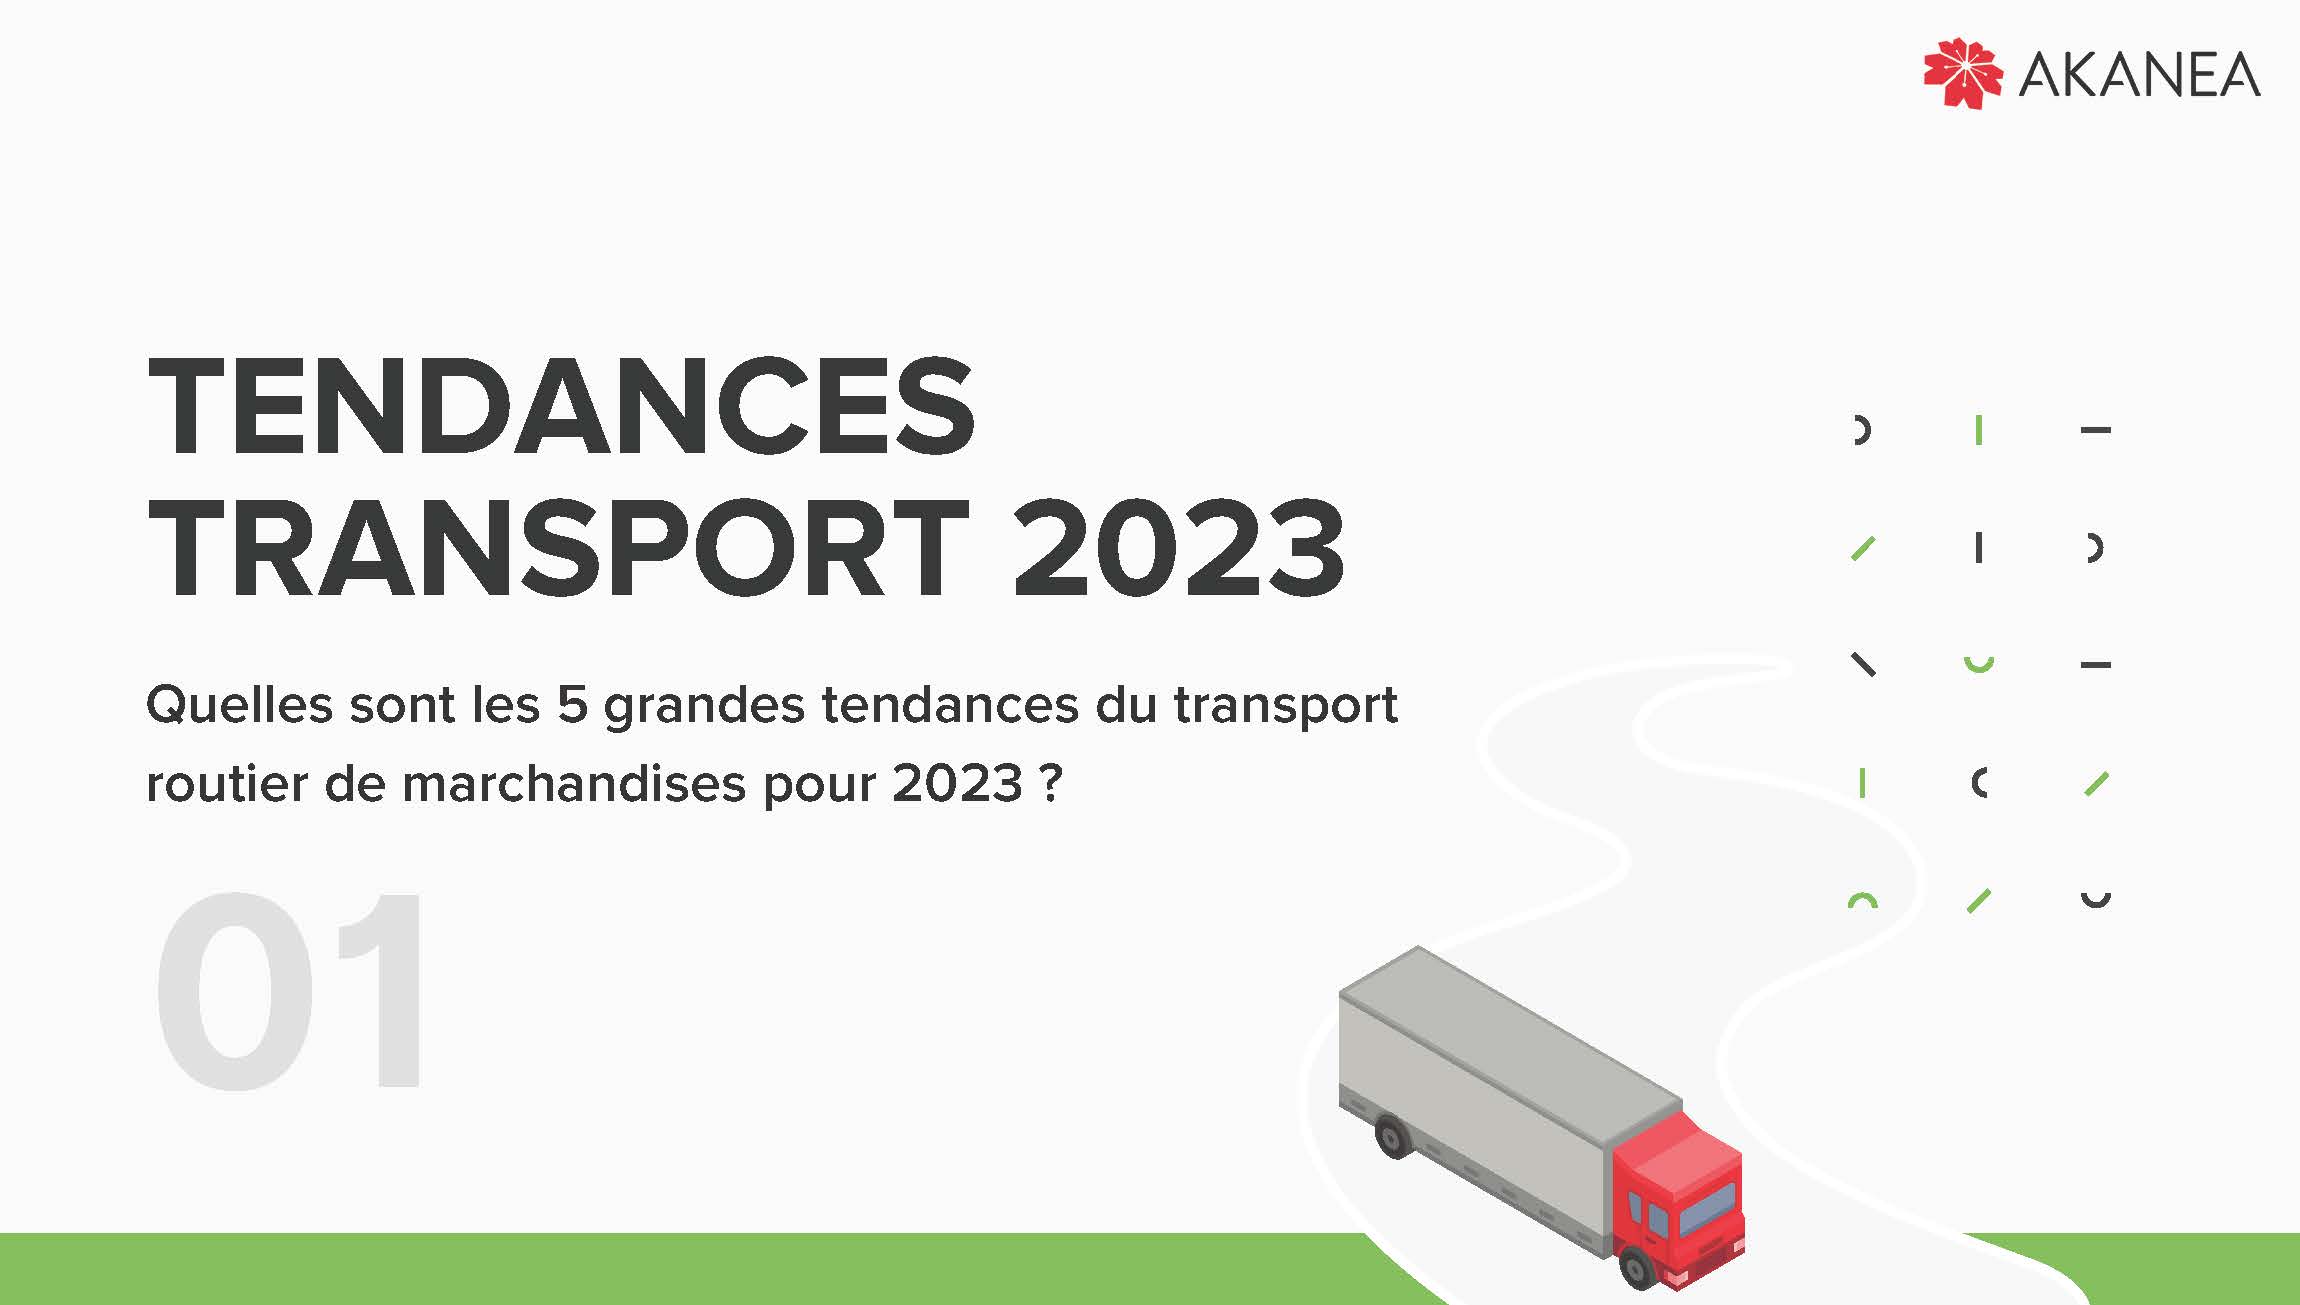 5-tendances-transport-routier-2023